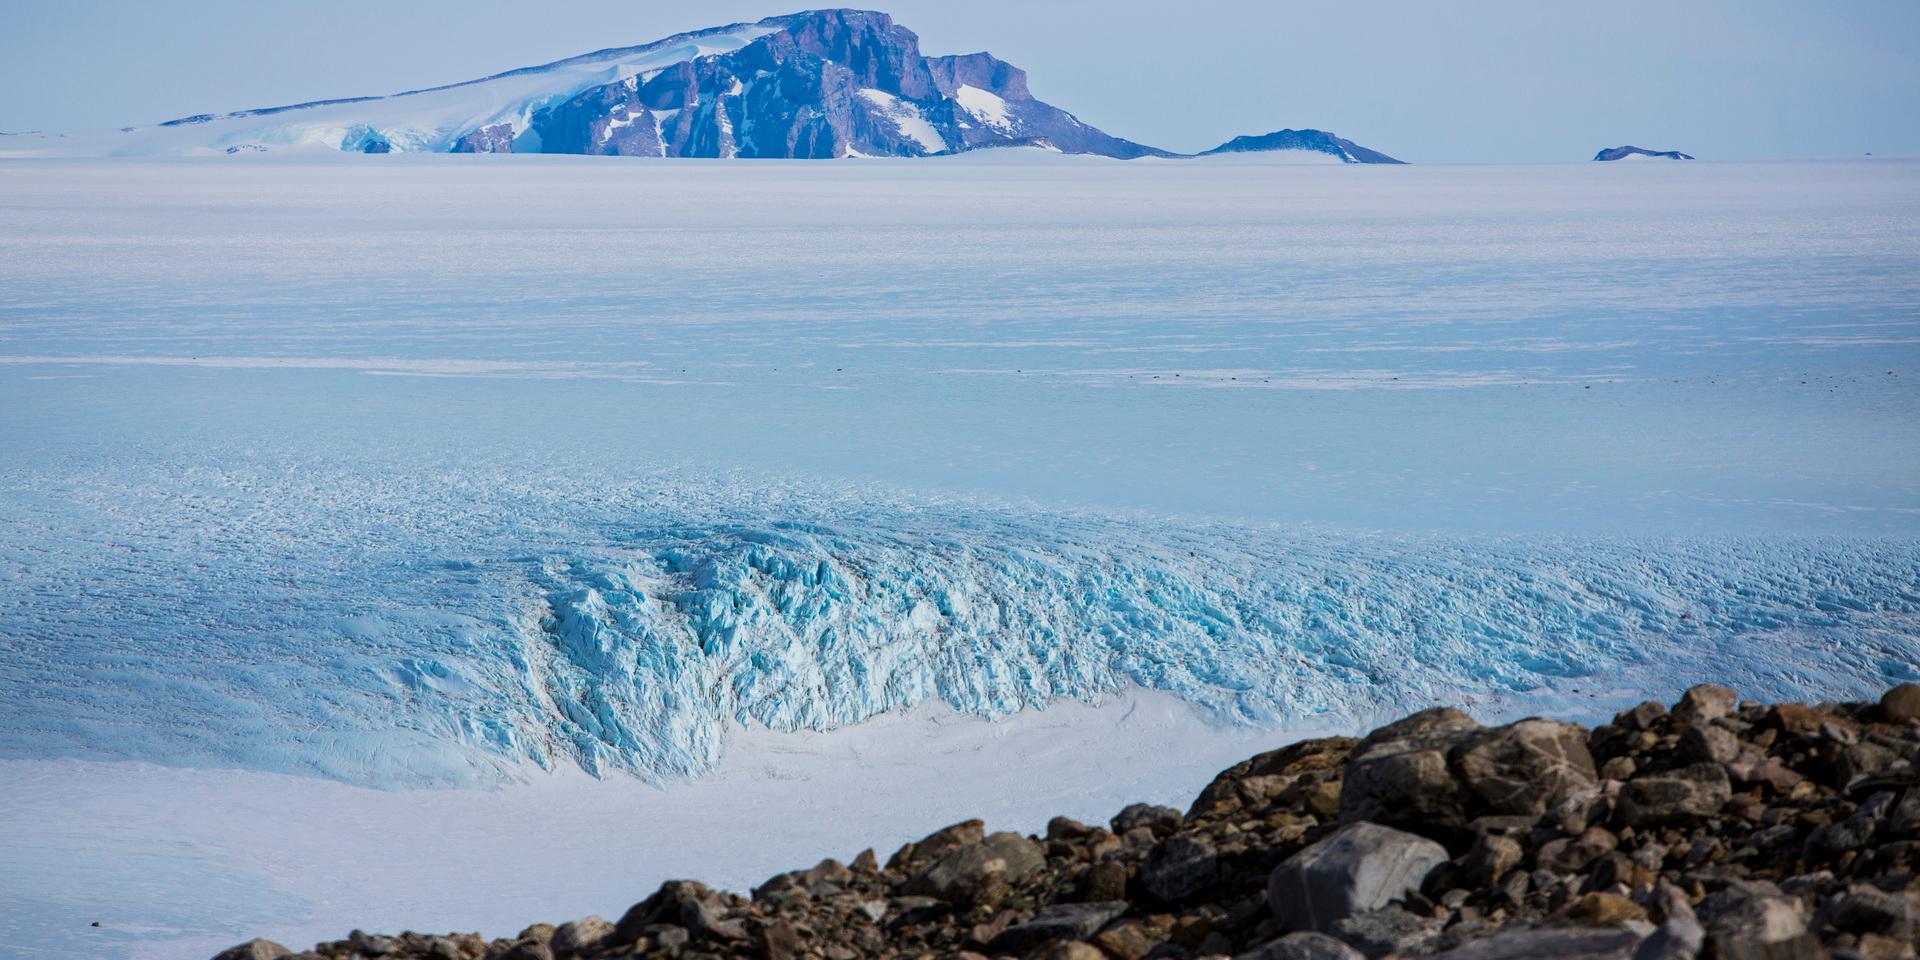 Ismassorna i Arktis och Antarktis smälter i en rasande takt och om det får fortsätta kommer havsnivån att öka dramatiskt, skriver debattören.